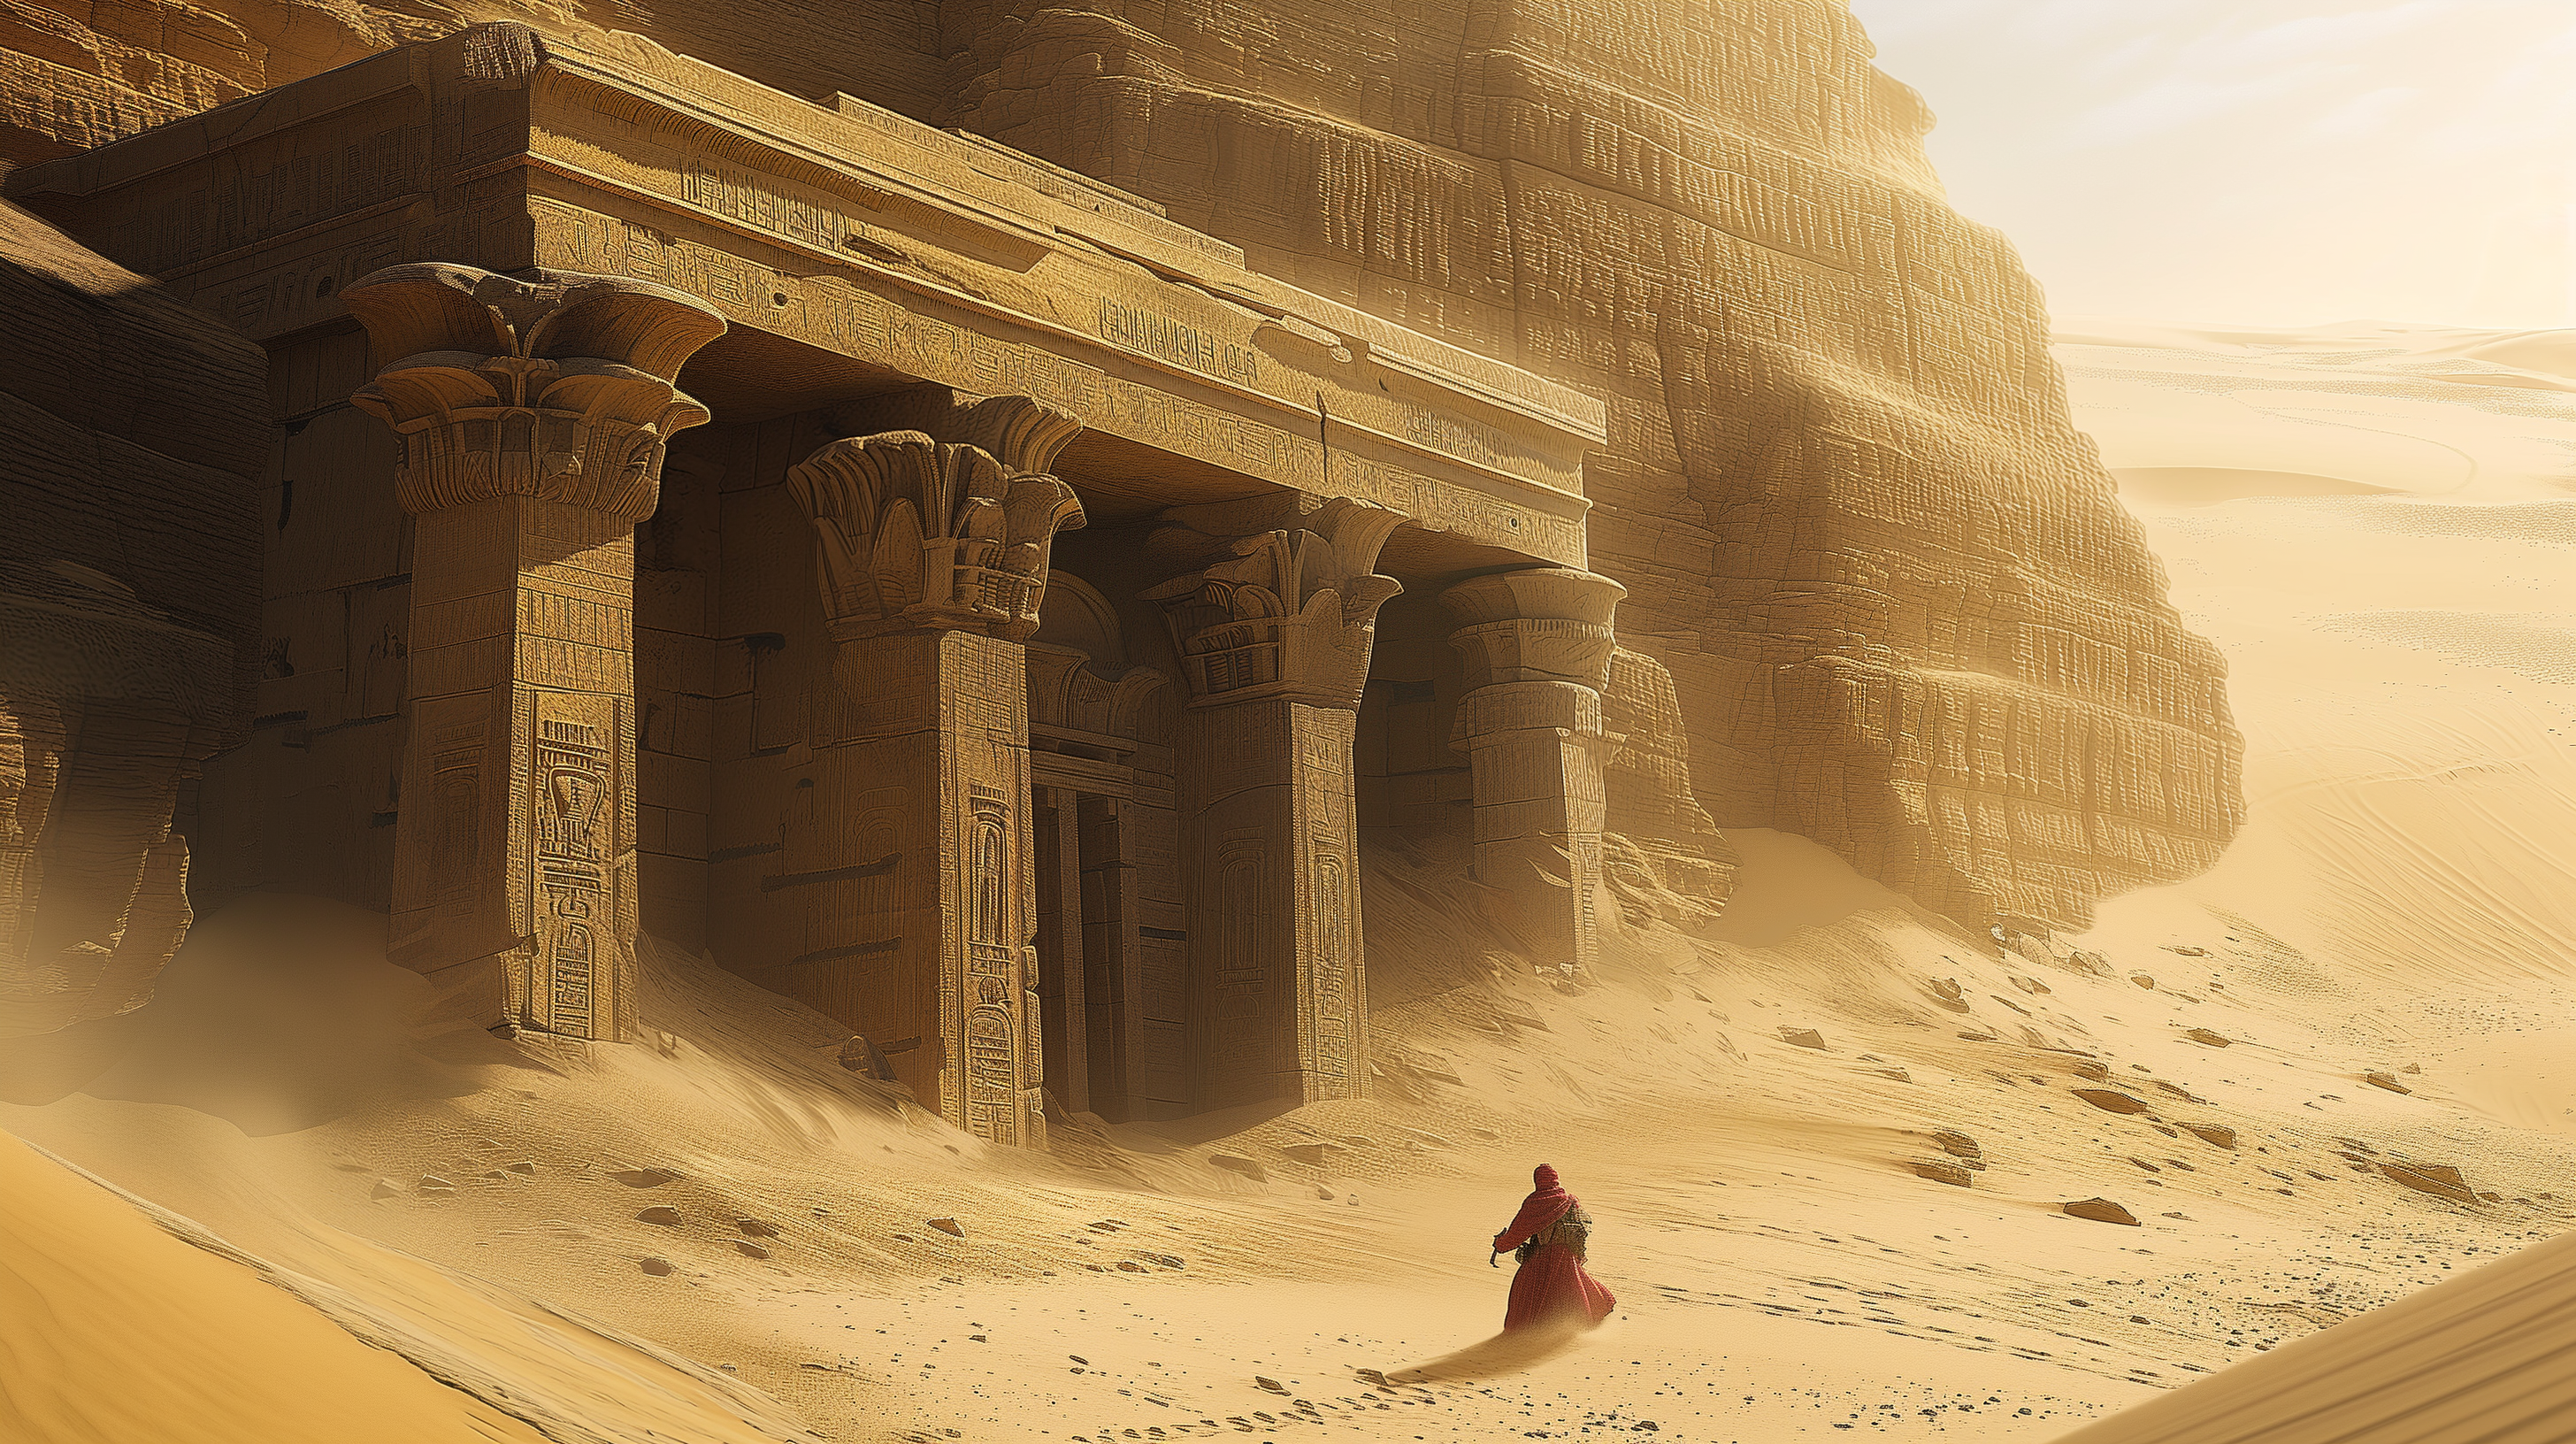 General 2912x1632 Egyptian mythology desert temple Egypt AI art Mystery pillar sand robes bright